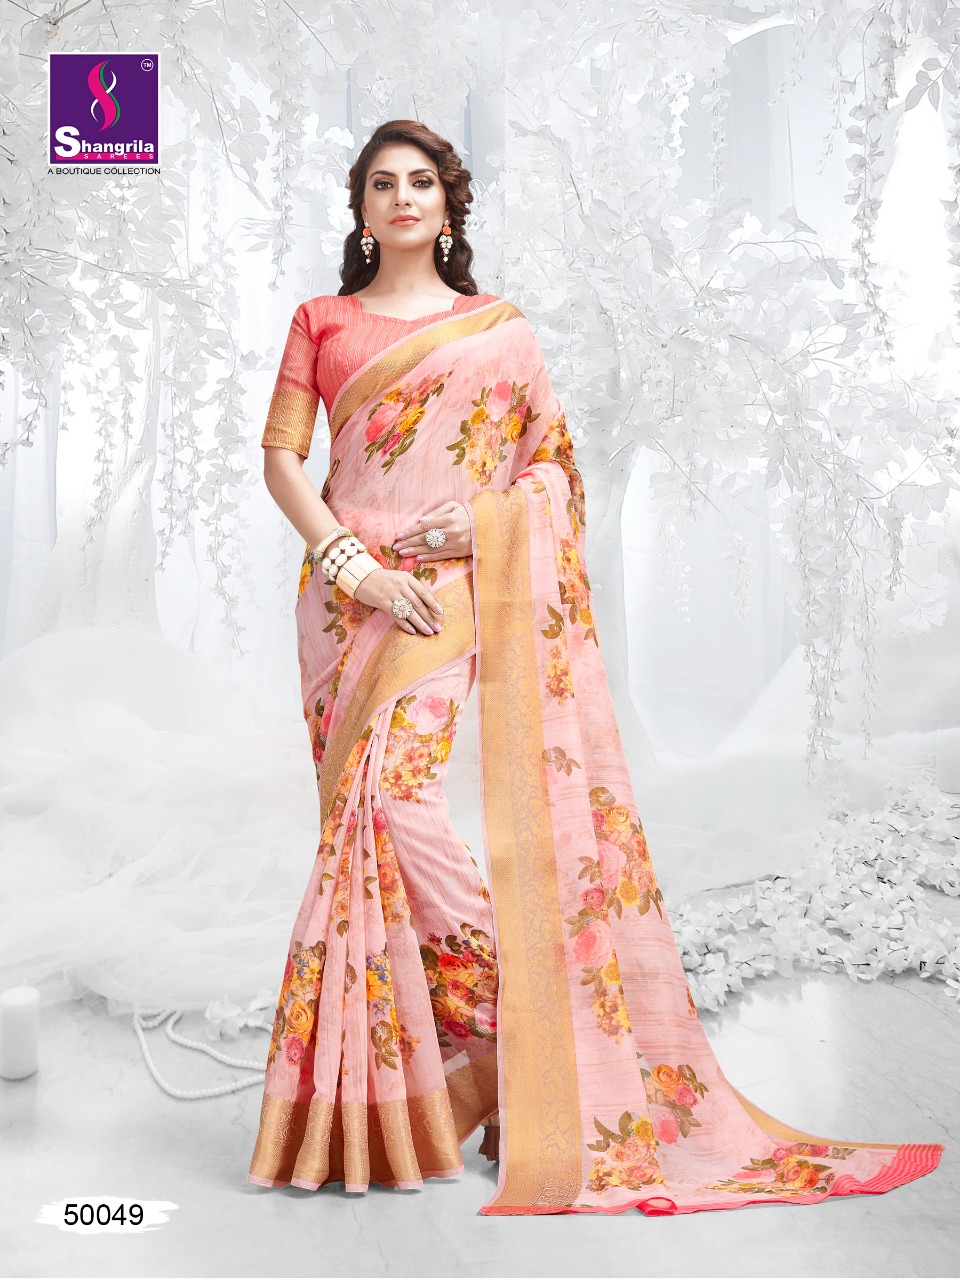 Shangrila Kadambari linen beautiful collection of colorful sarees